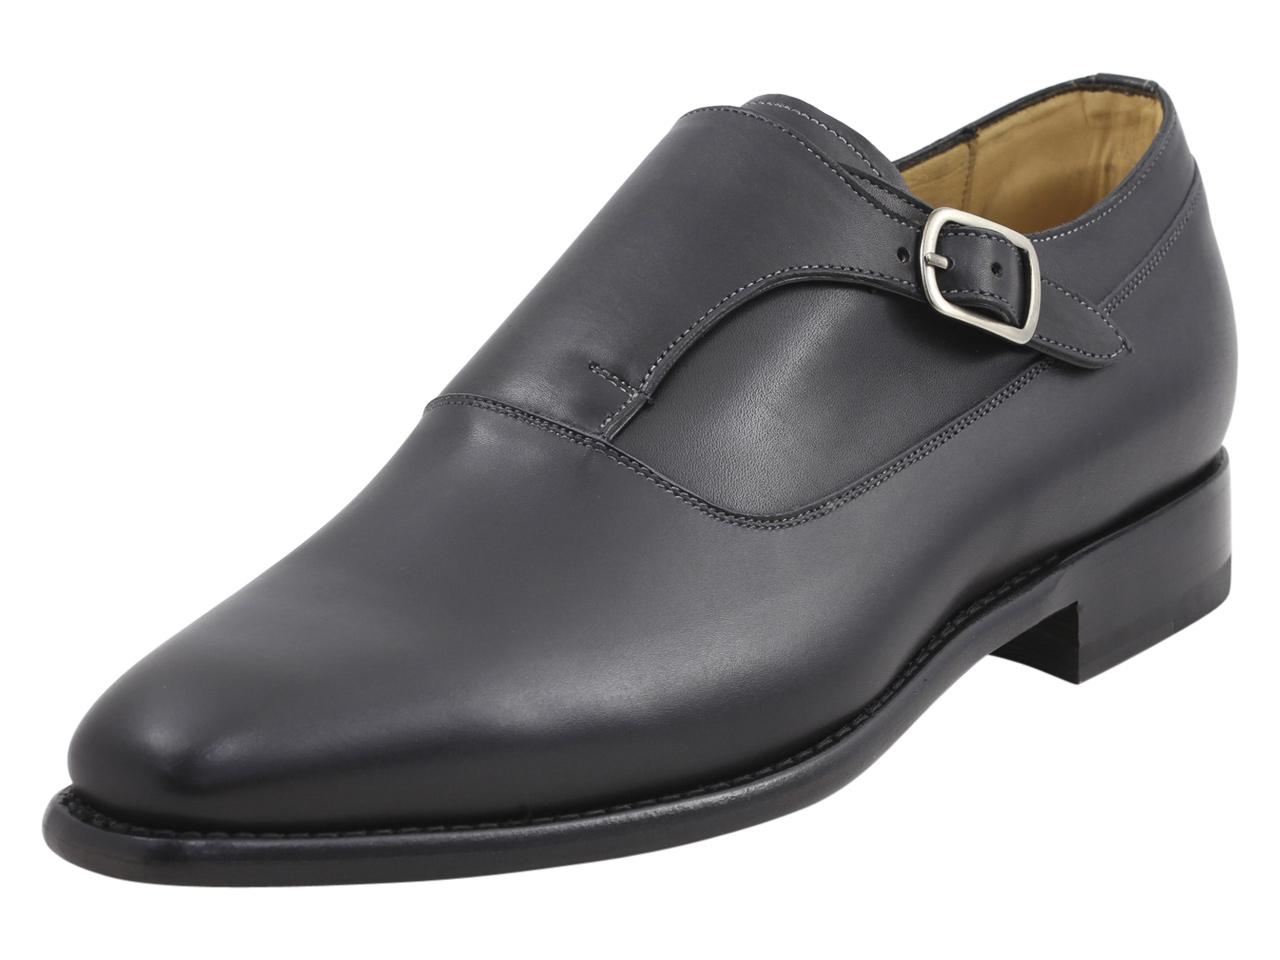 Mezlan Platinum Men's Algar Memory Foam Leather Monk Strap Loafers Shoes - Black - 12 D(M) US